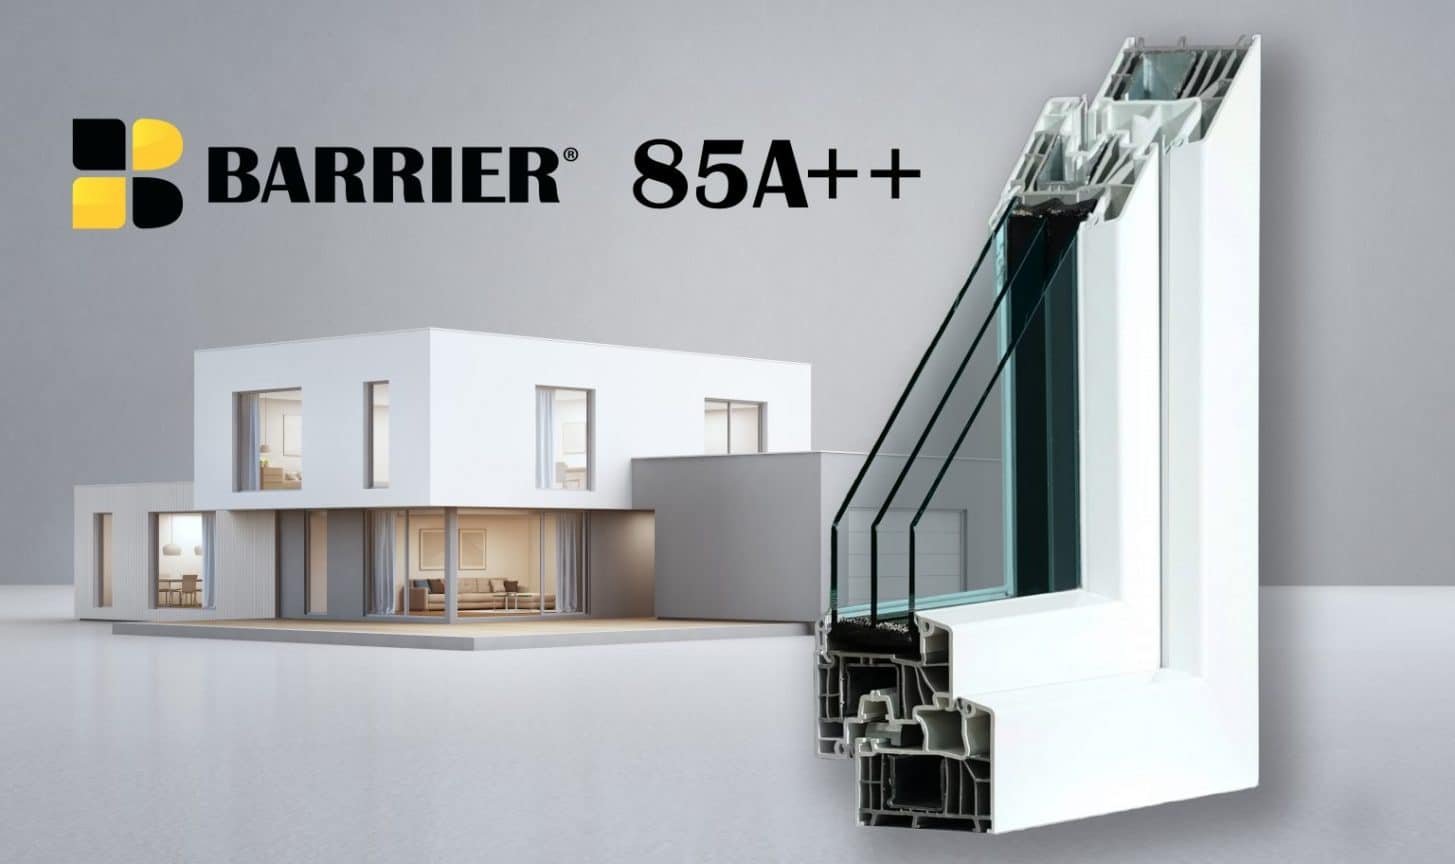 Barrier 85A++